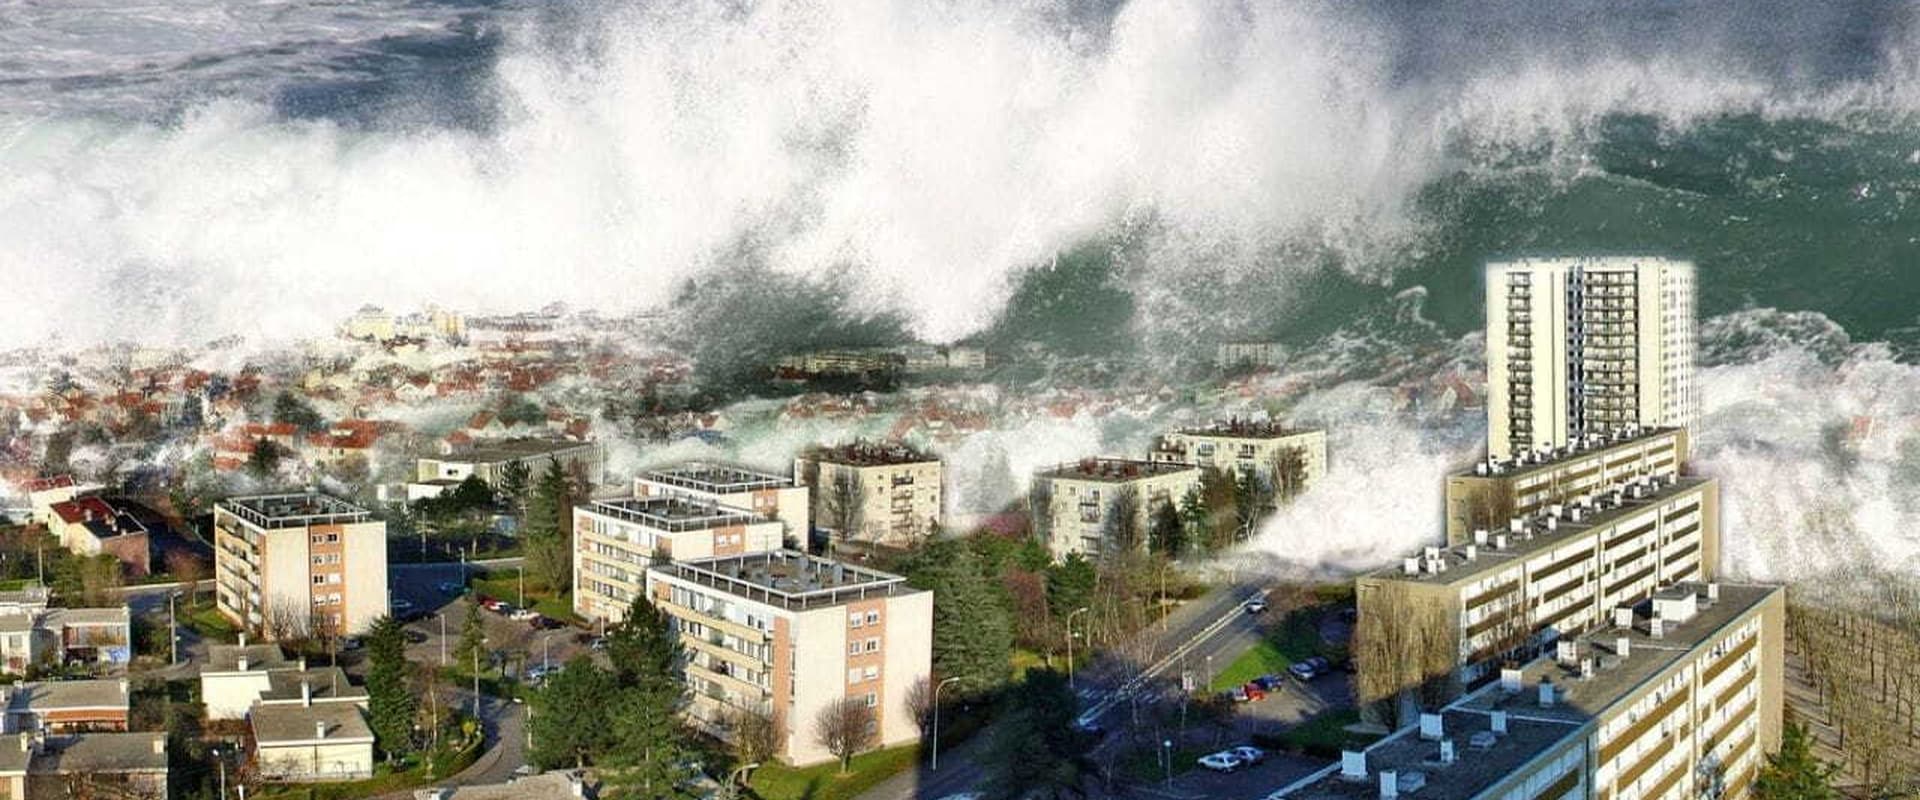 Tsunami: Il Giorno Dopo [HD]